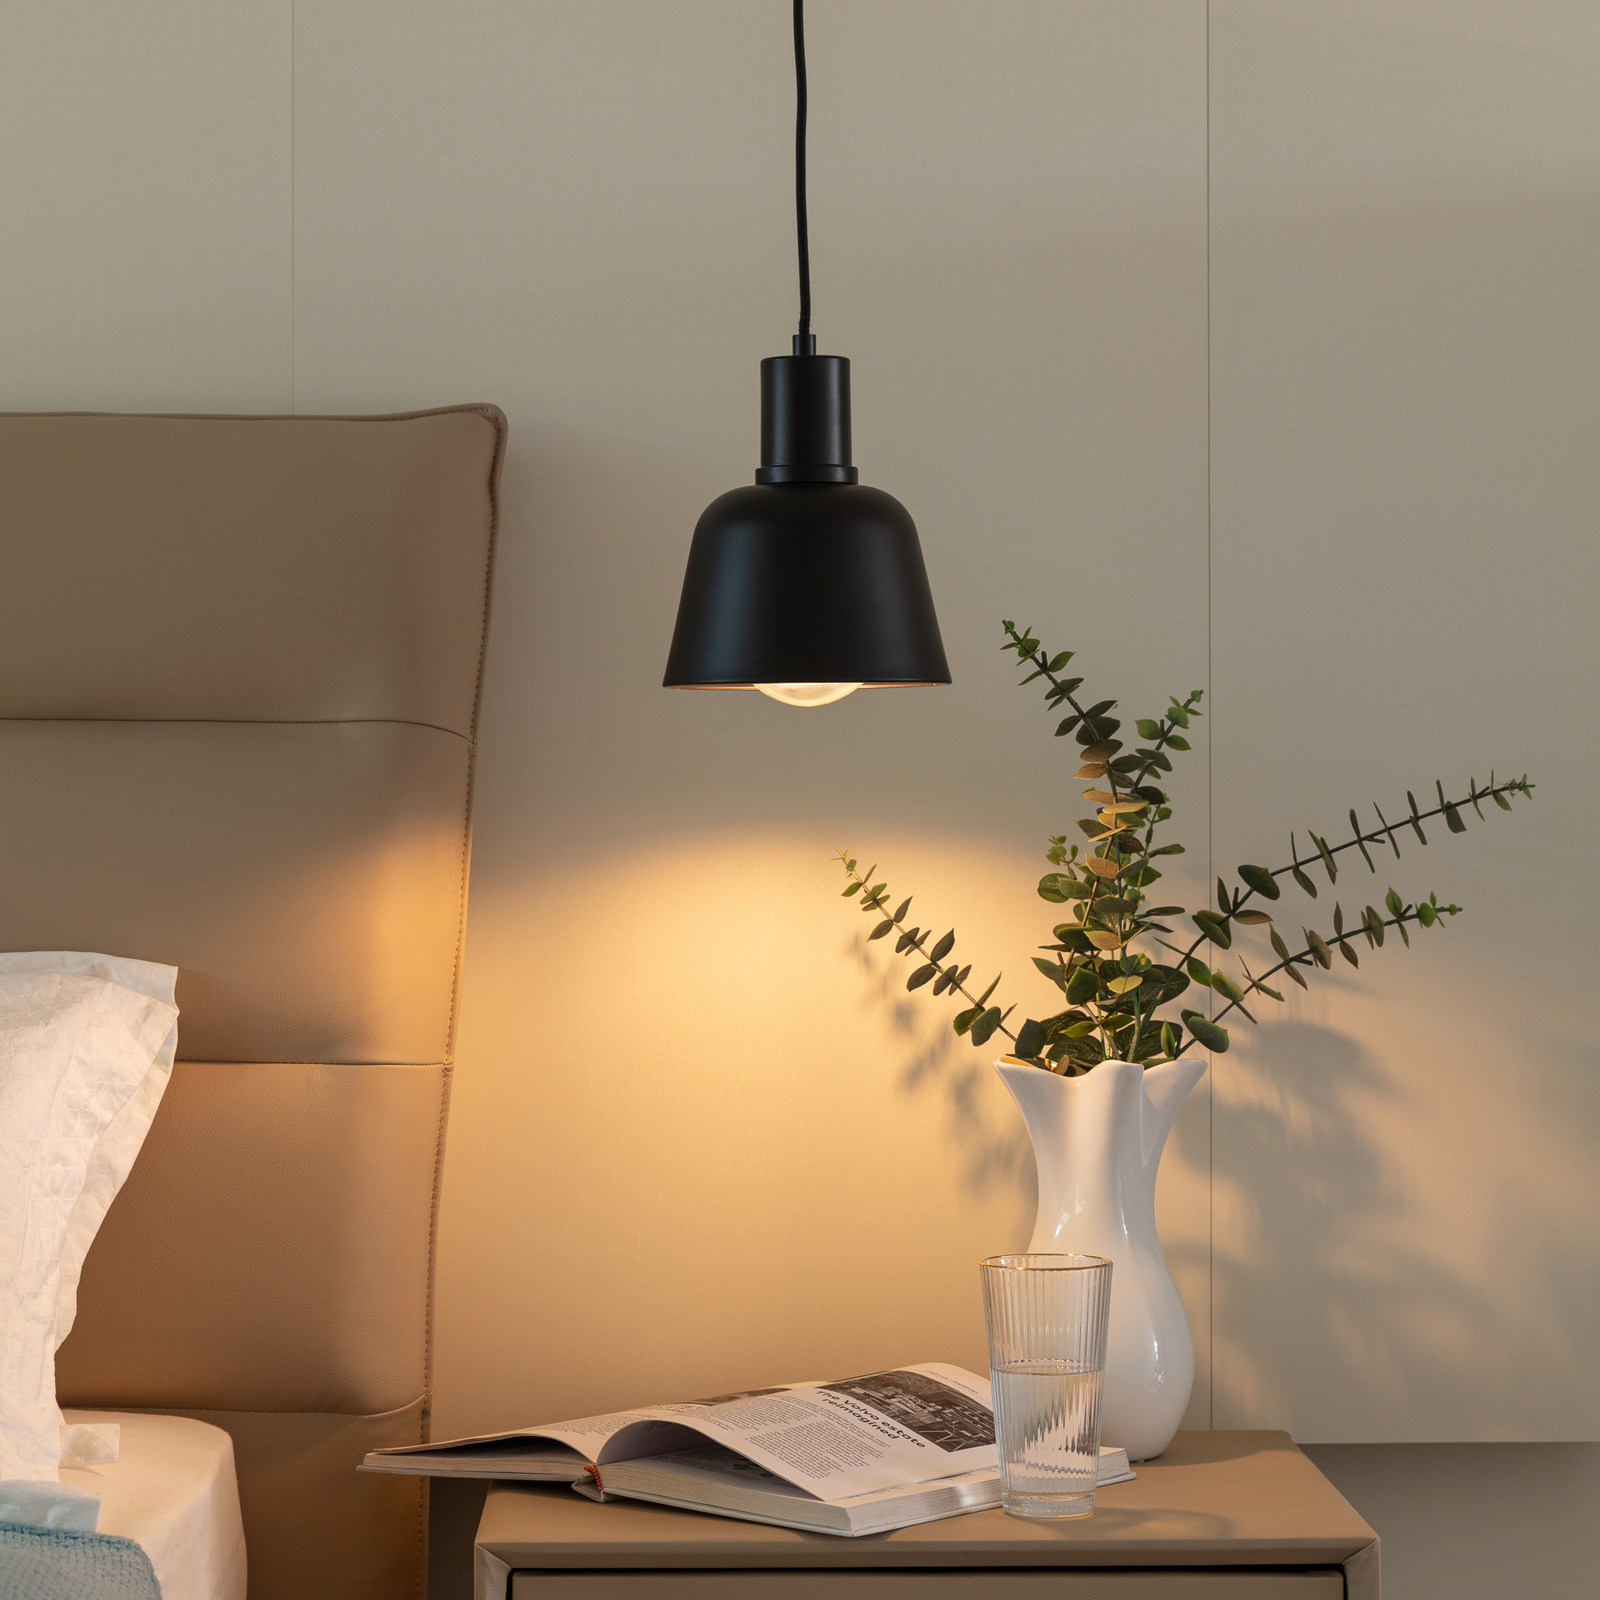 Lucande Servan hänglampa, svart, 1 lampa